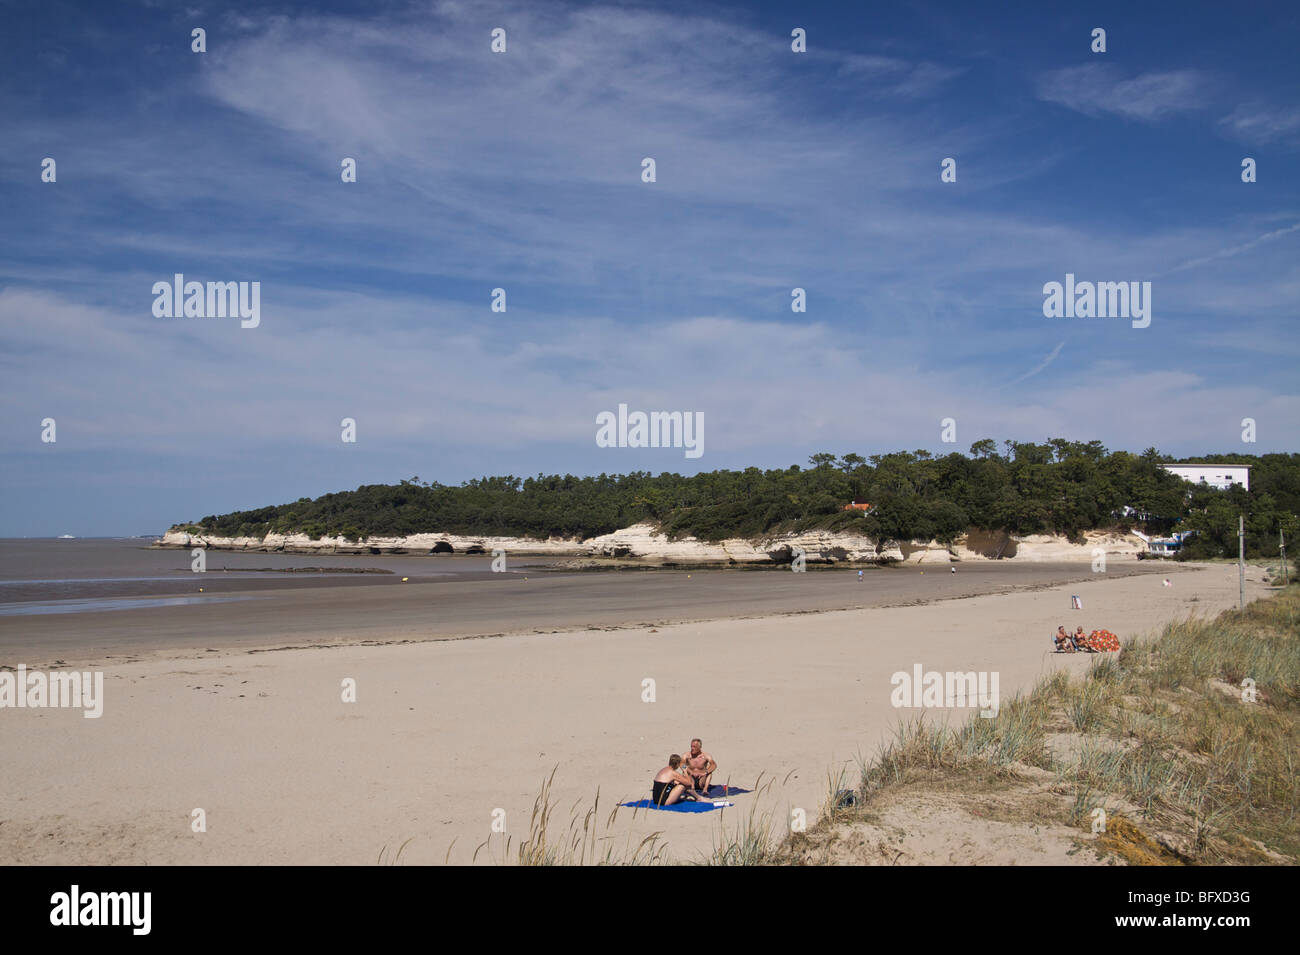 Plage, l'estuaire de la Gironde, France Banque D'Images